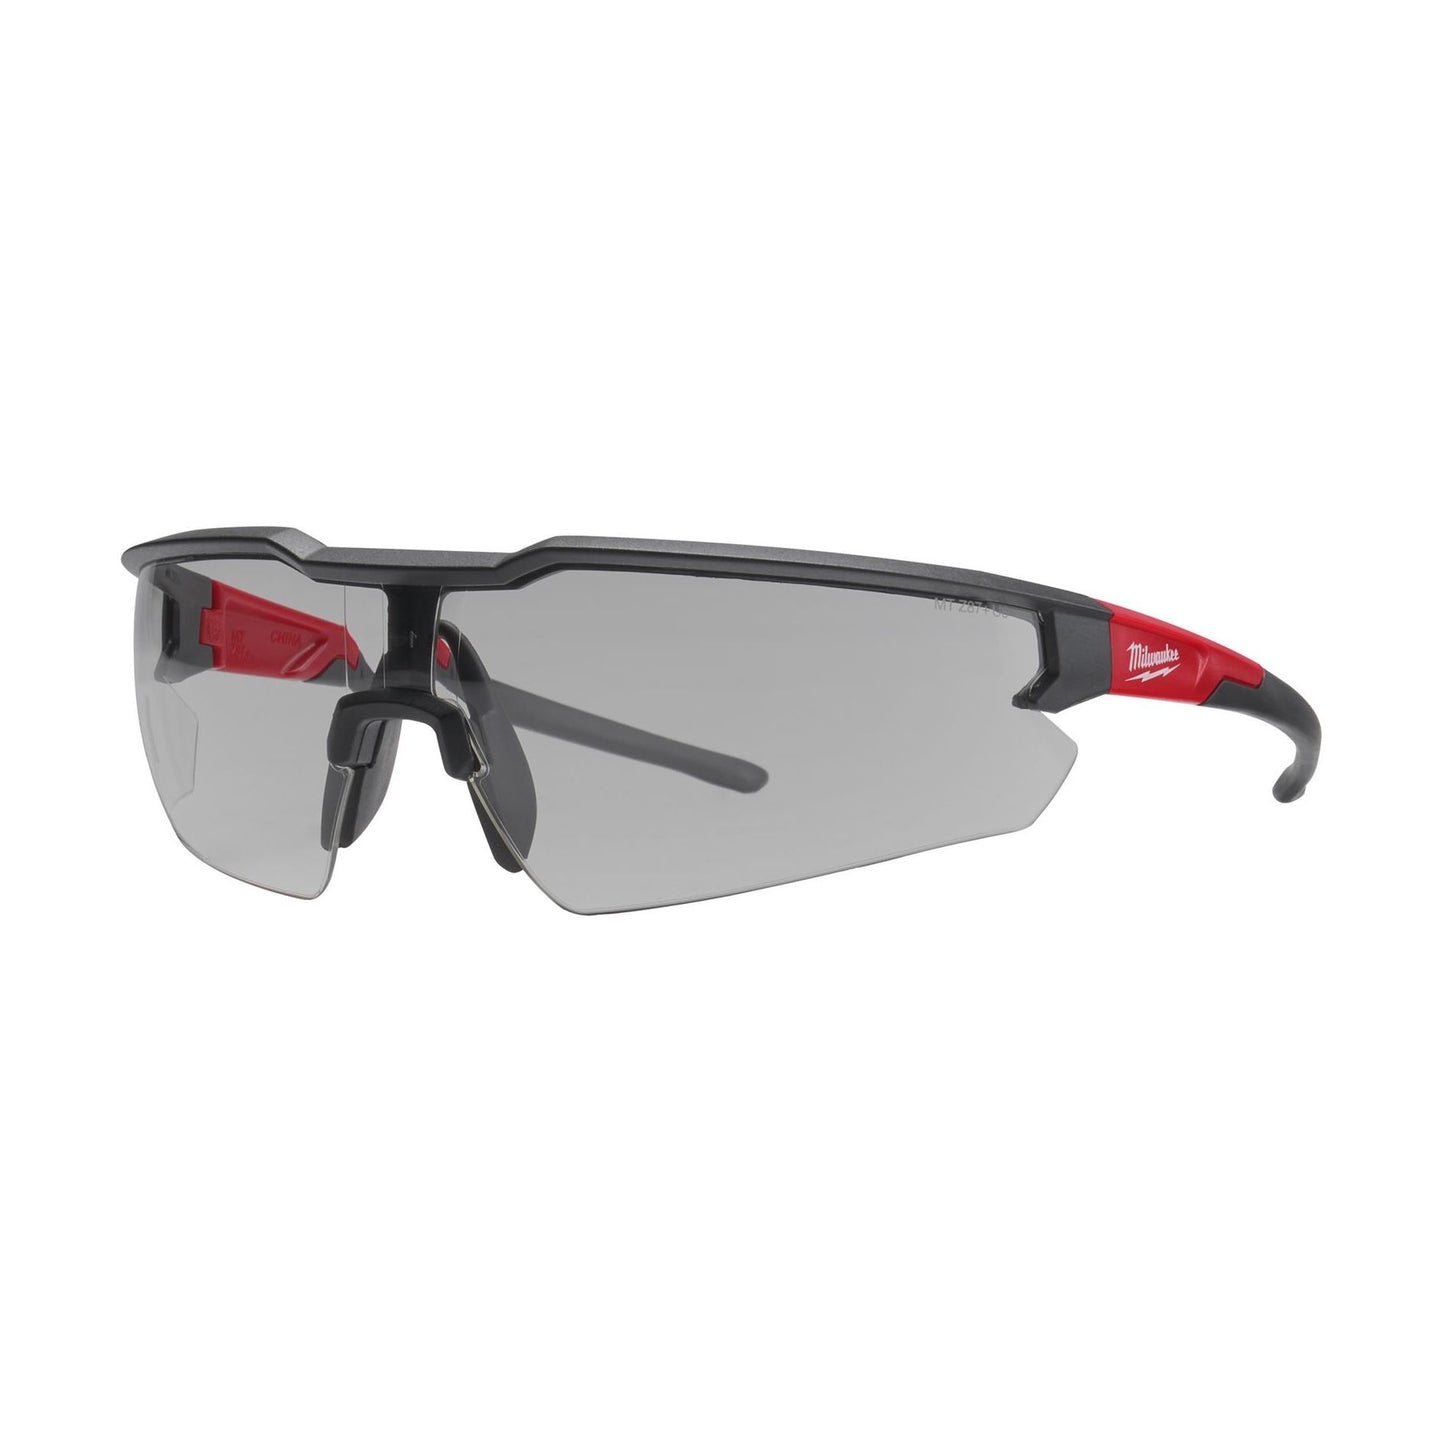 48-73-2107 - Safety Glasses - Gray Fog-Free Lenses